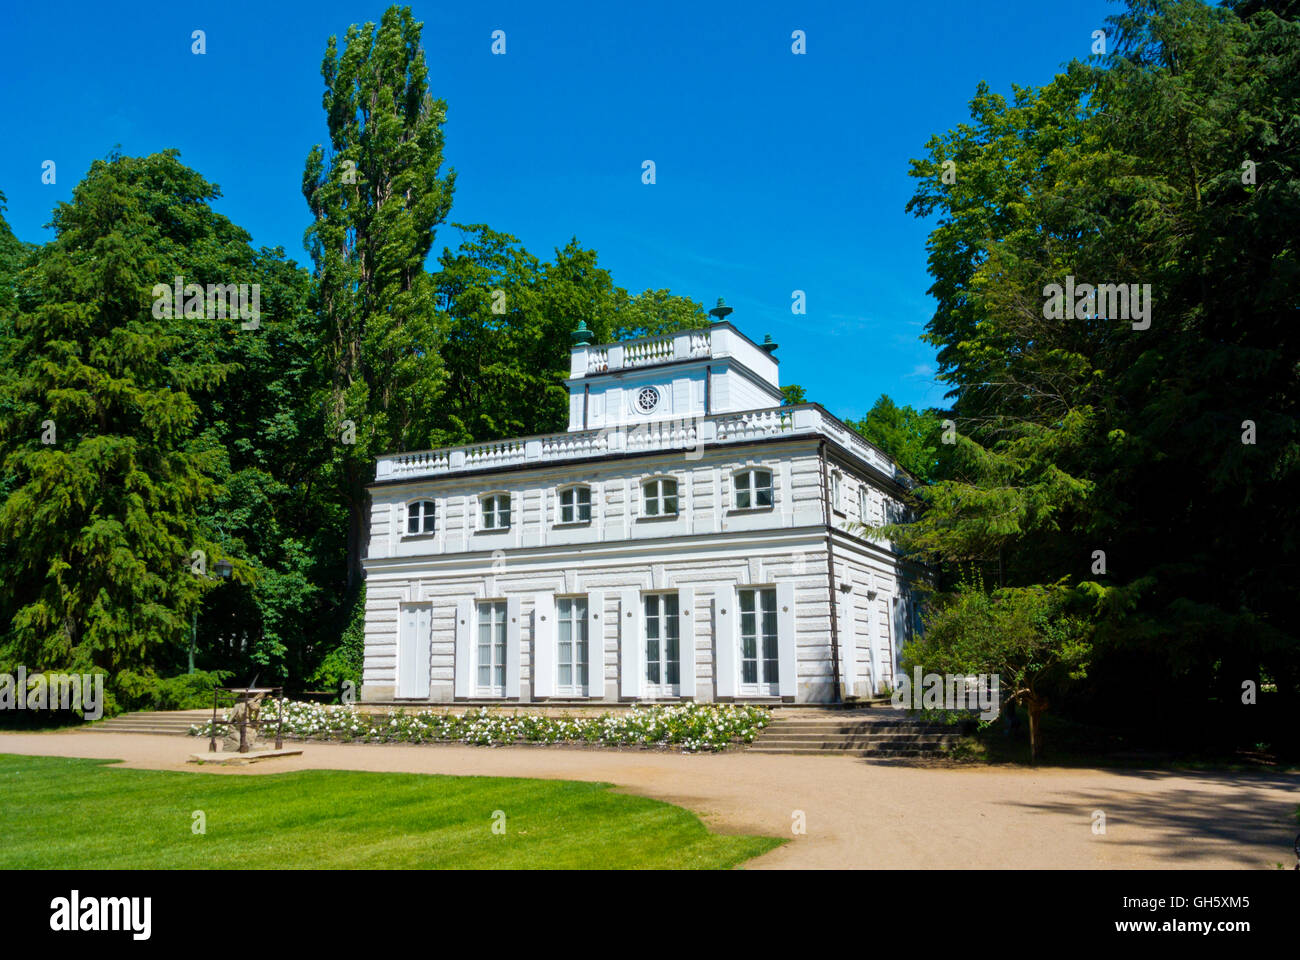 Bialy Dom, White House, Lazienki Krolewskie, Lazienki Park, Warsaw, Poland Stock Photo